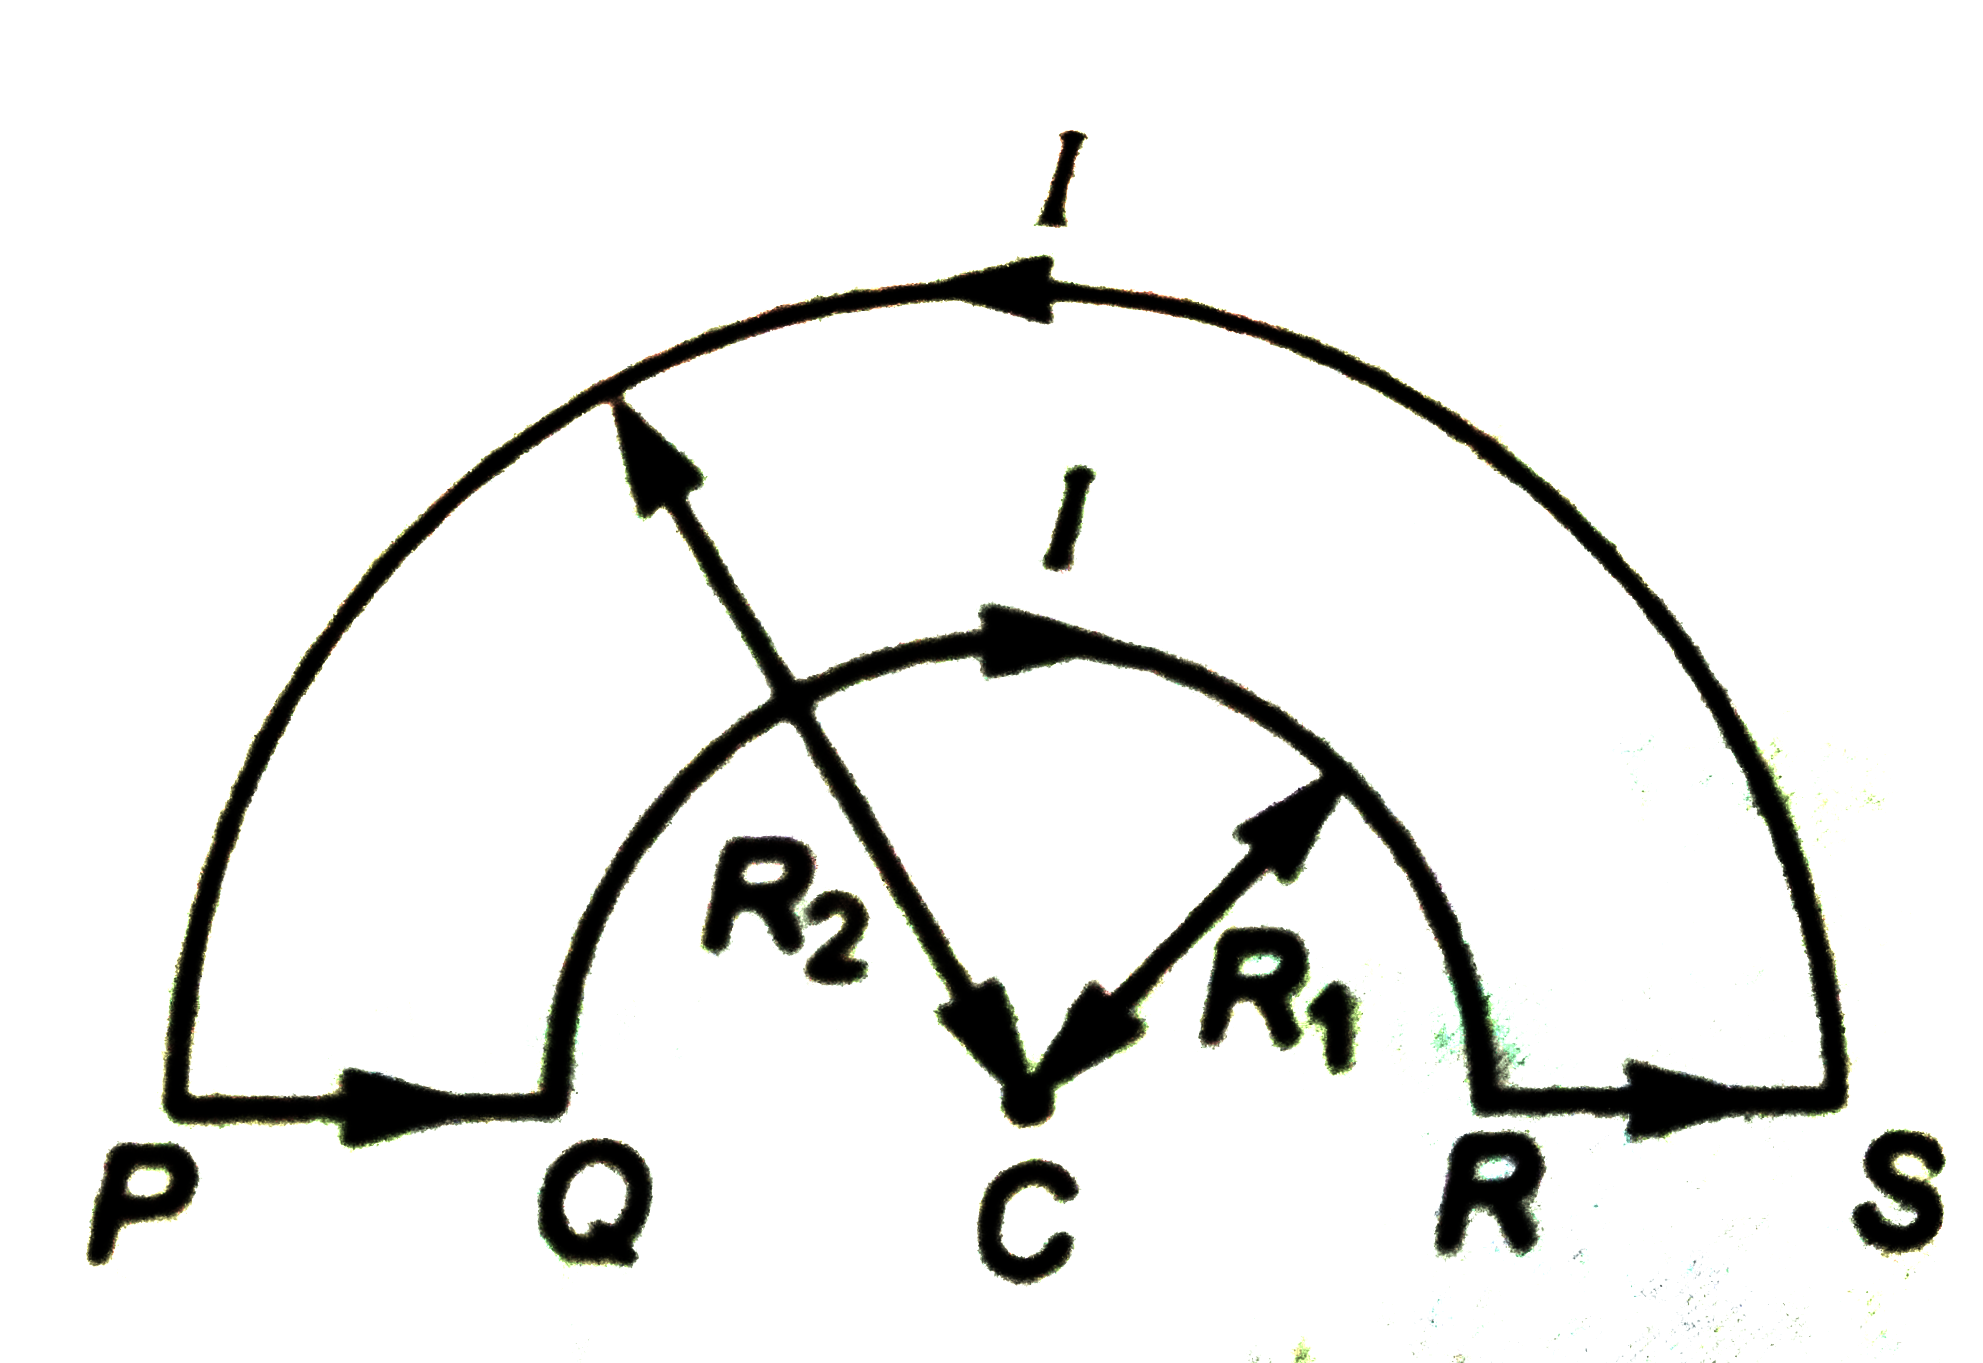 तारों के लूप PQRSP में, जो R(1) व R(2) त्रिज्याओं के दो अधरवरित्कार तारों को जोड़कर बना हैं, धारा i बहती हैं। केंद्र c पर चुंबकीय क्षेत्र कि तीव्रता तथा दिशा ज्ञात कीजिये।